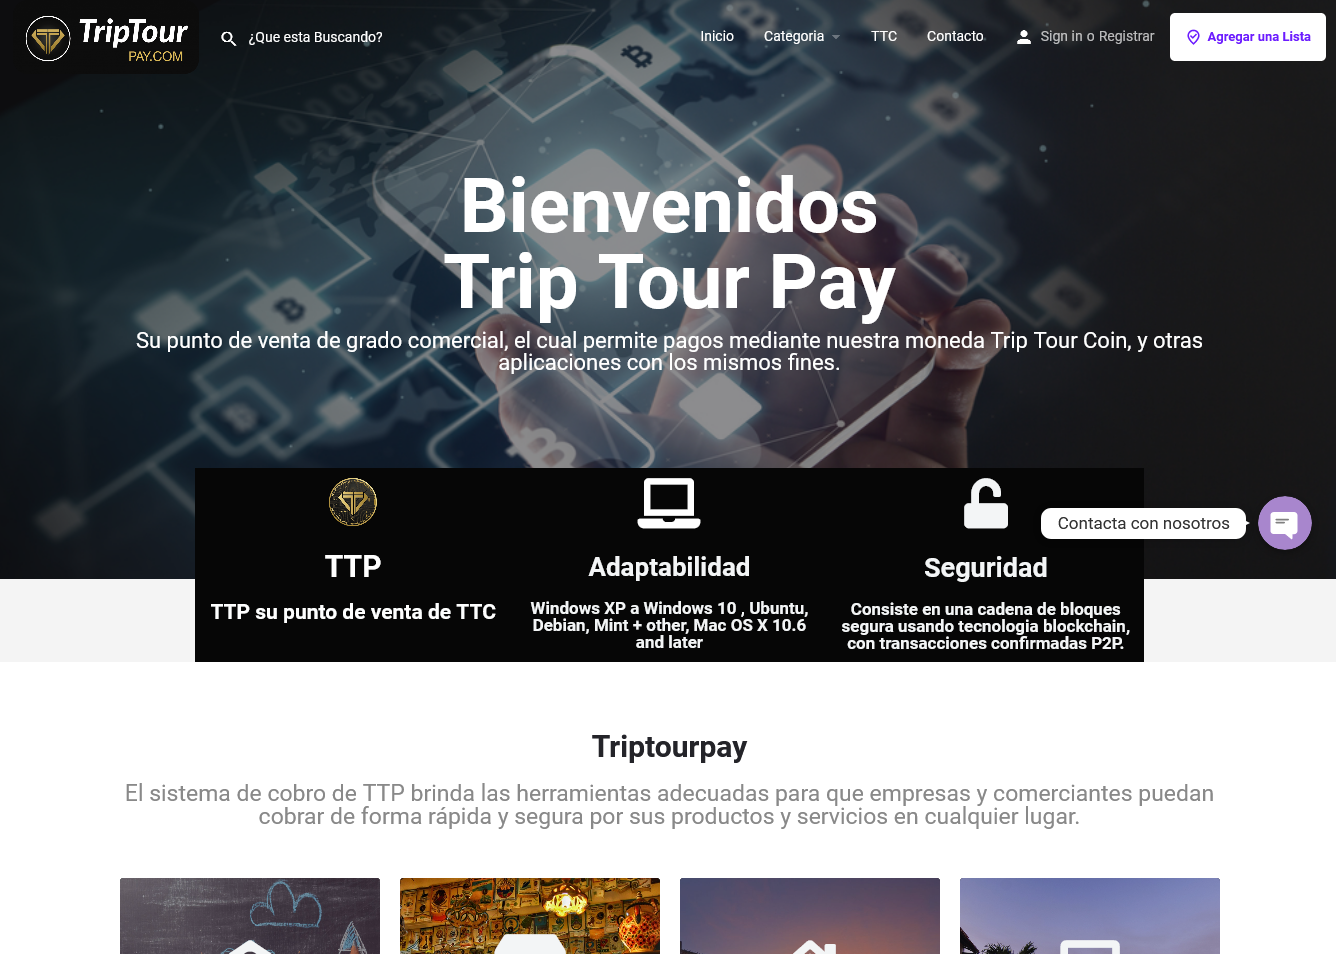 Trip Tour Pay